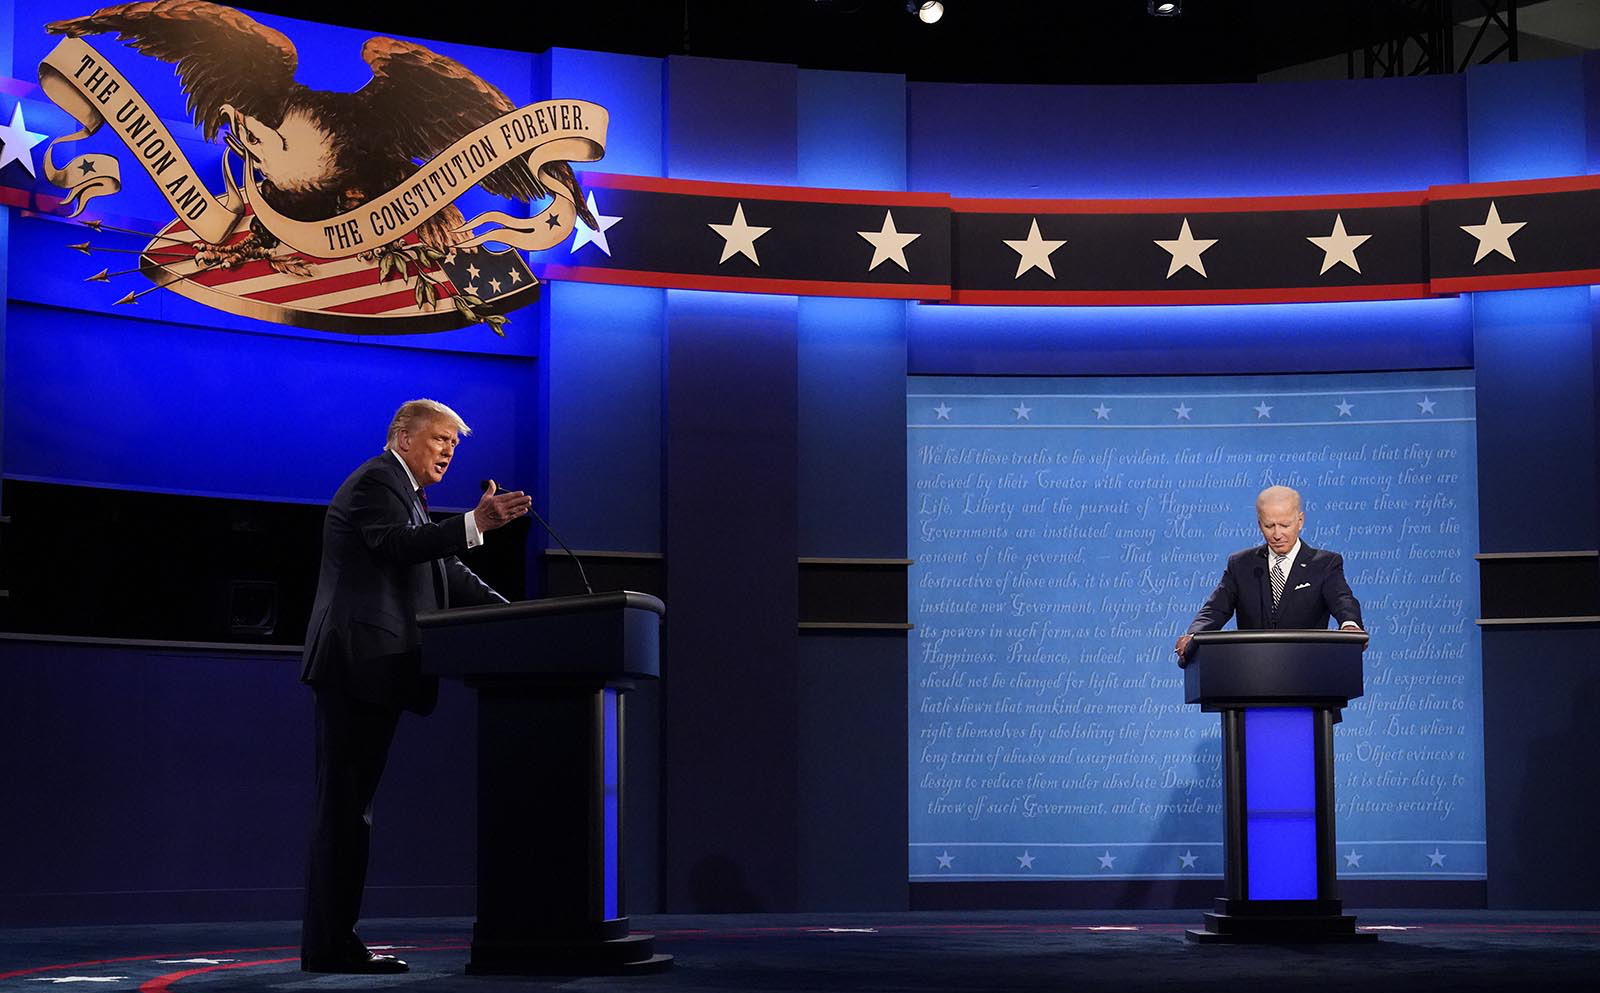 Cười trừ, lắc đầu: Ông Biden giữ bình tĩnh gần như suốt cuộc tranh luận nhưng lại nổi giận vì điều này